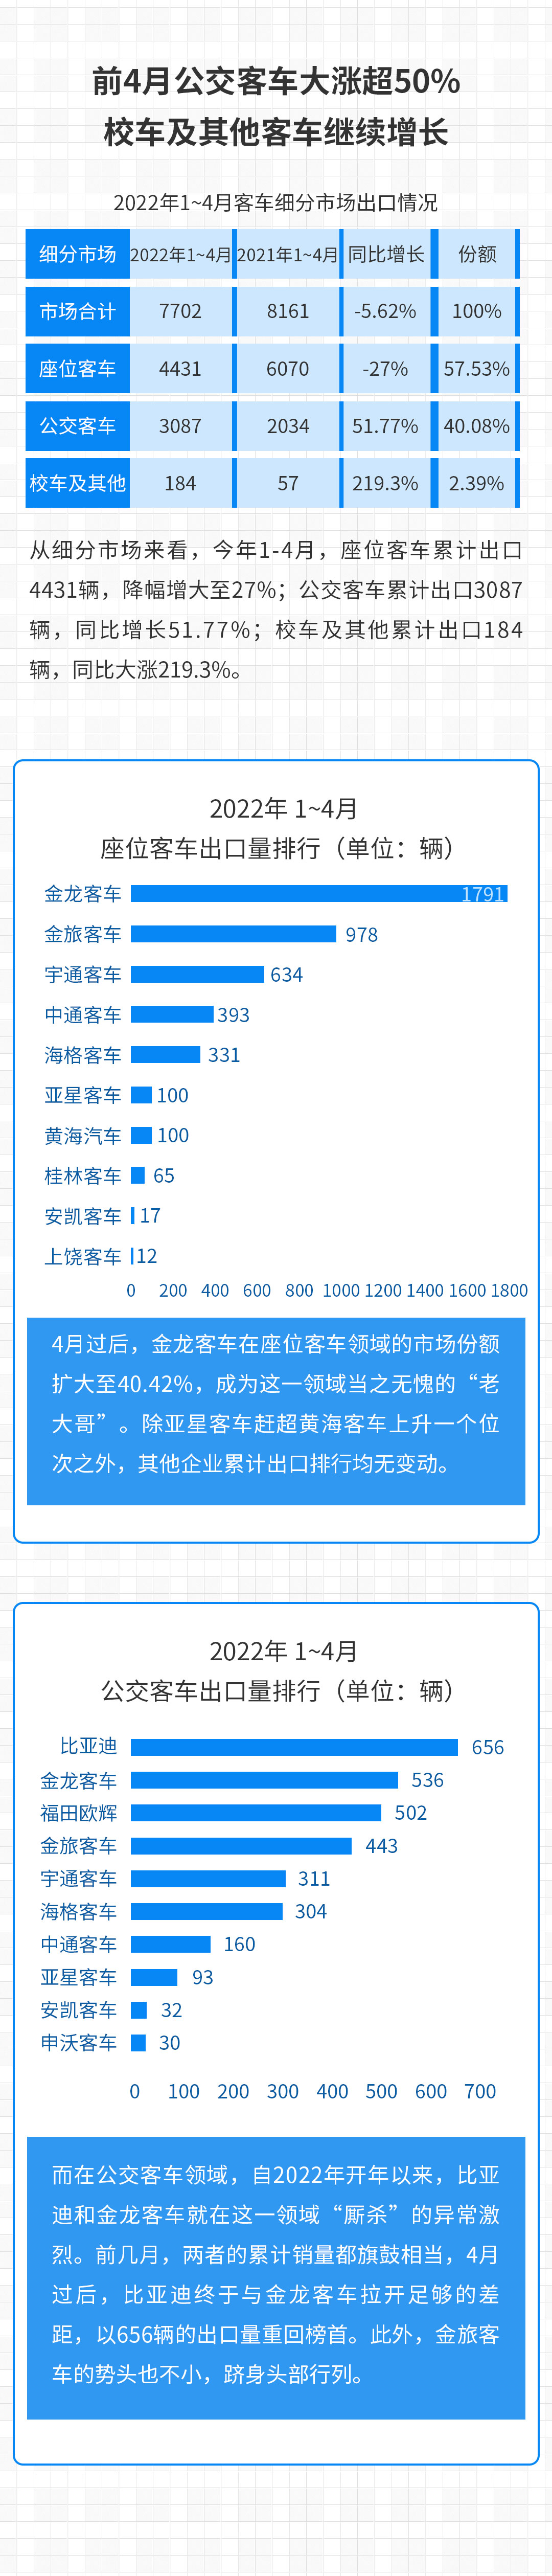 【第一商用车网 原创】据中国客车统计信息网数据，从各家企业上报的情况来看，今年1-4月，我国实现出口客车7702辆，同比下降5.62%。其中，大型客车出口3593辆，同比增长26.07%；中型客车出口1265辆，同比增长51.5%；轻型客车出口1386辆，同比下降19.14%。